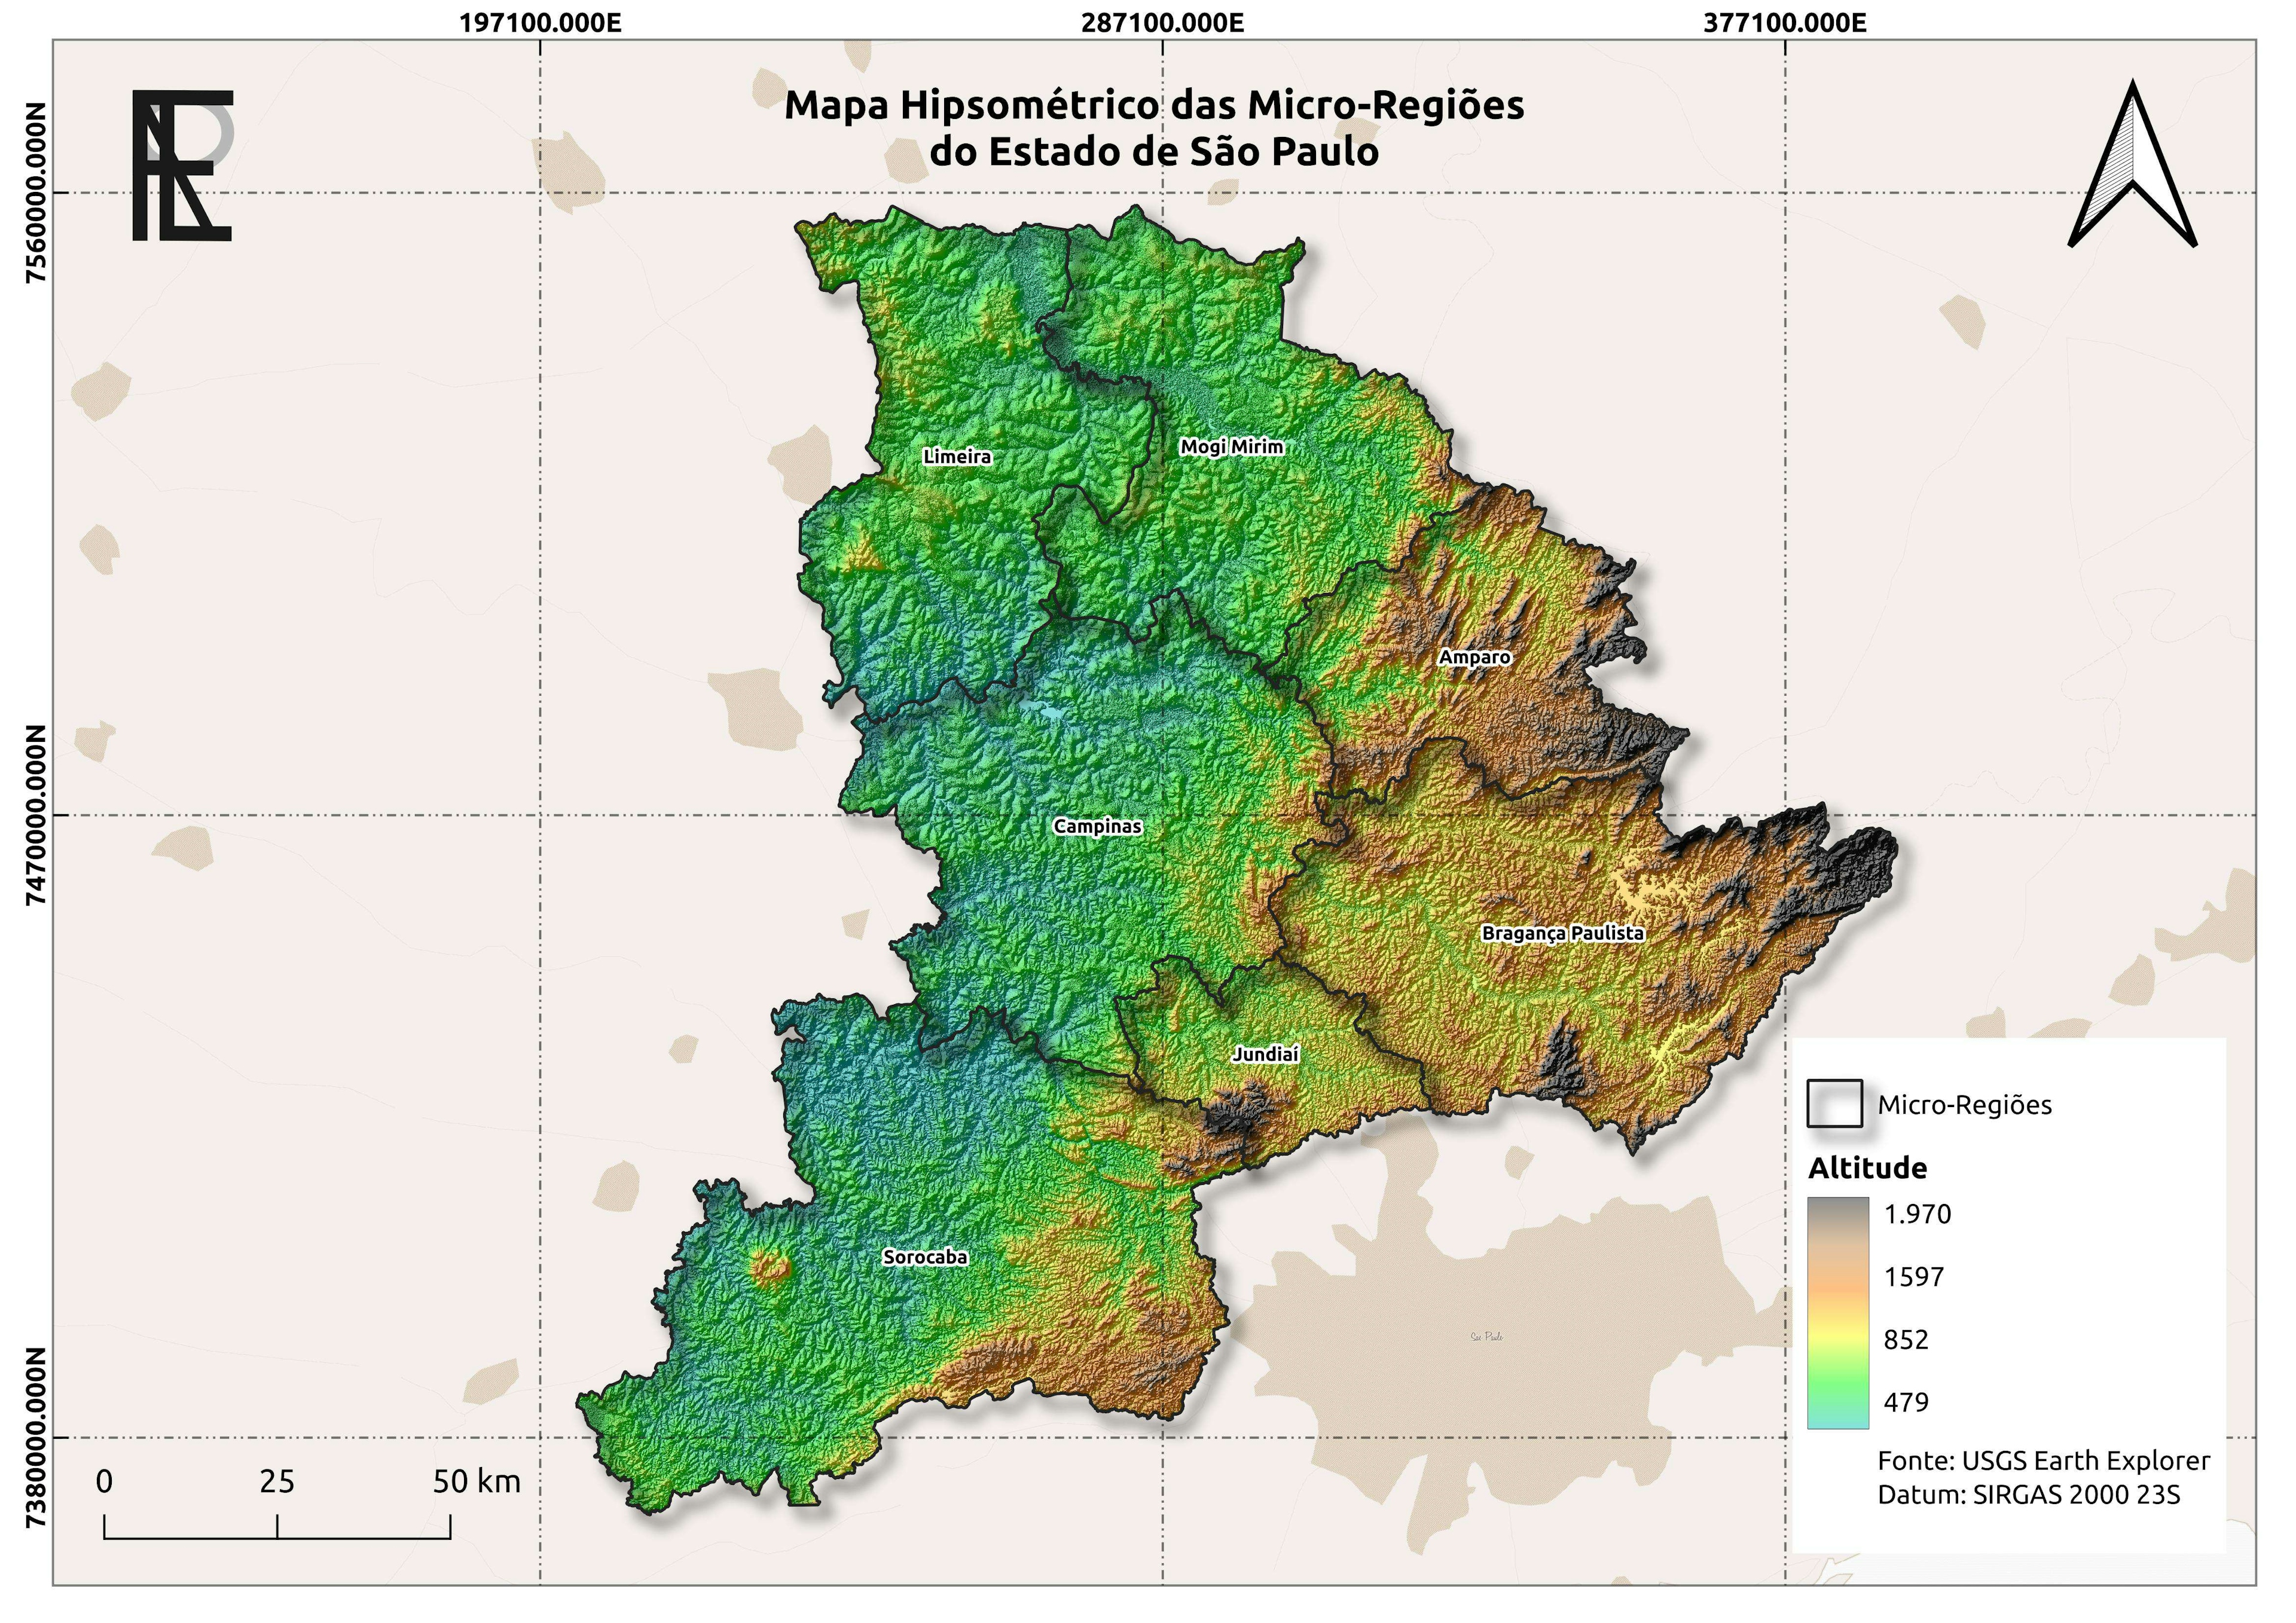 Mapa - Hipsométrico das Micro-Regiões